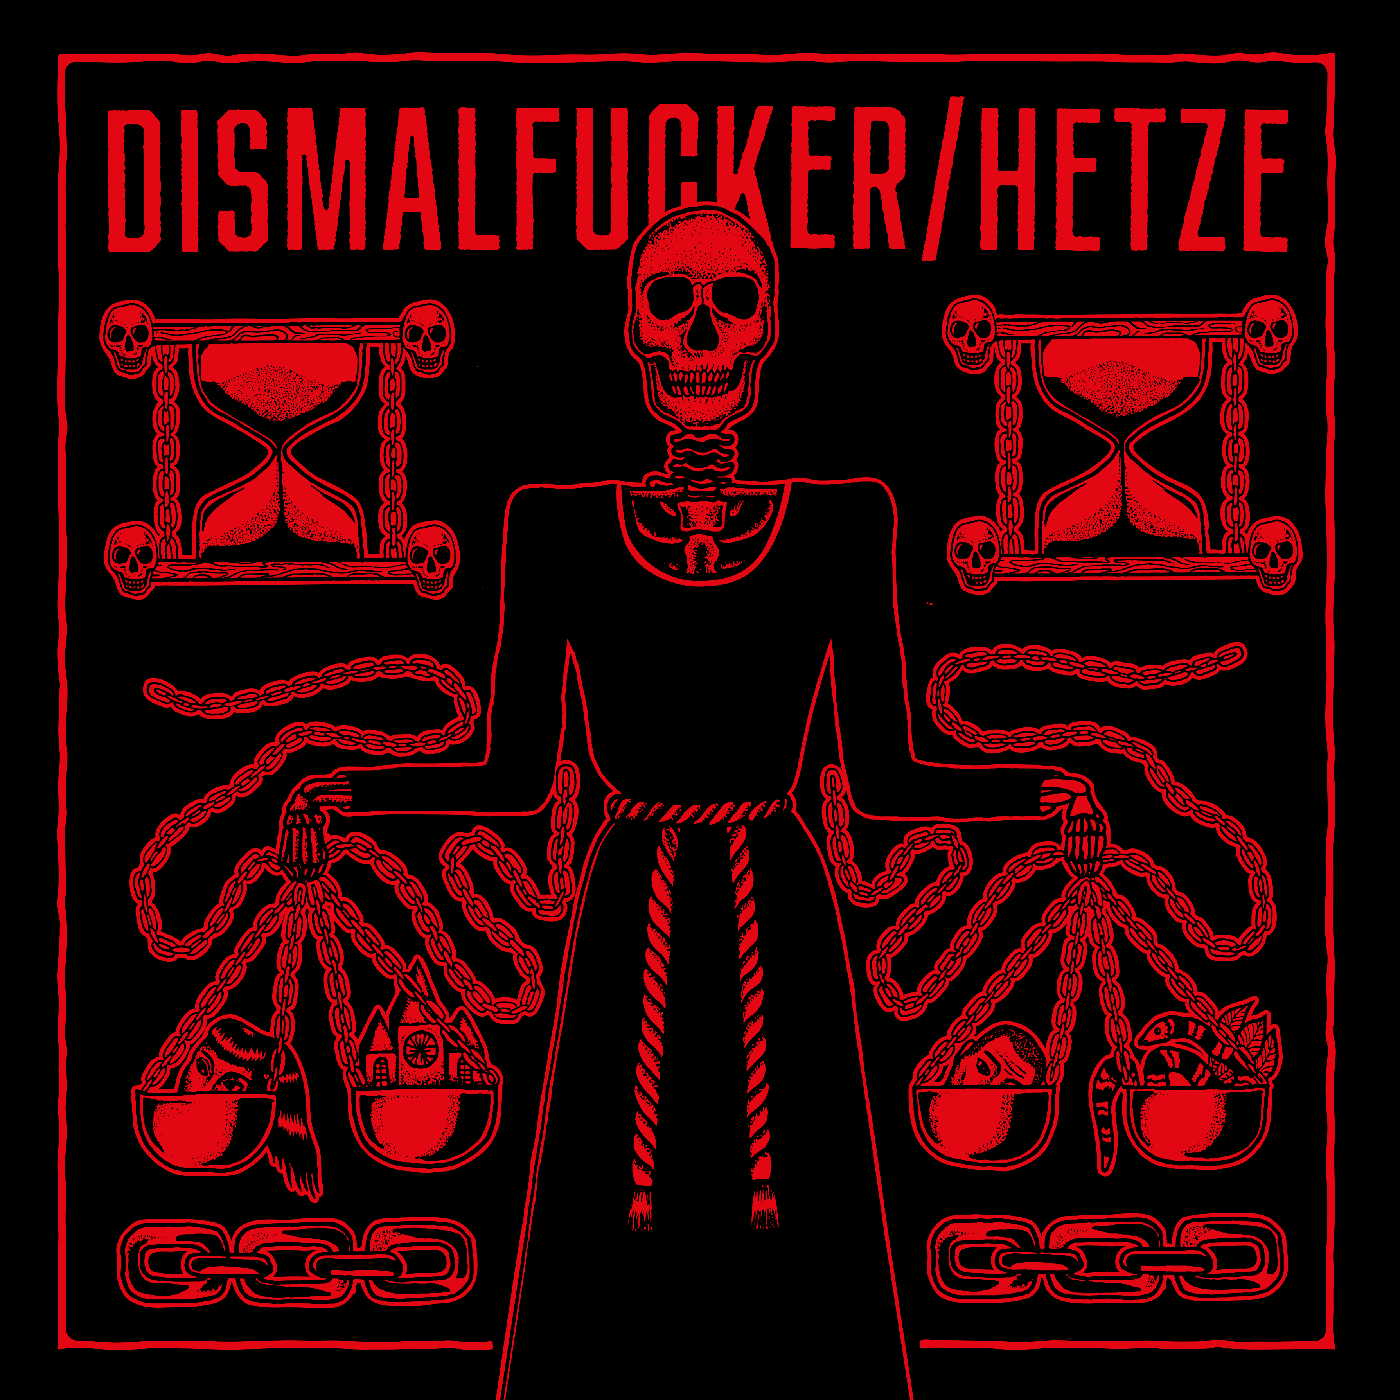 Dismalfucker / Hetze - Split LP